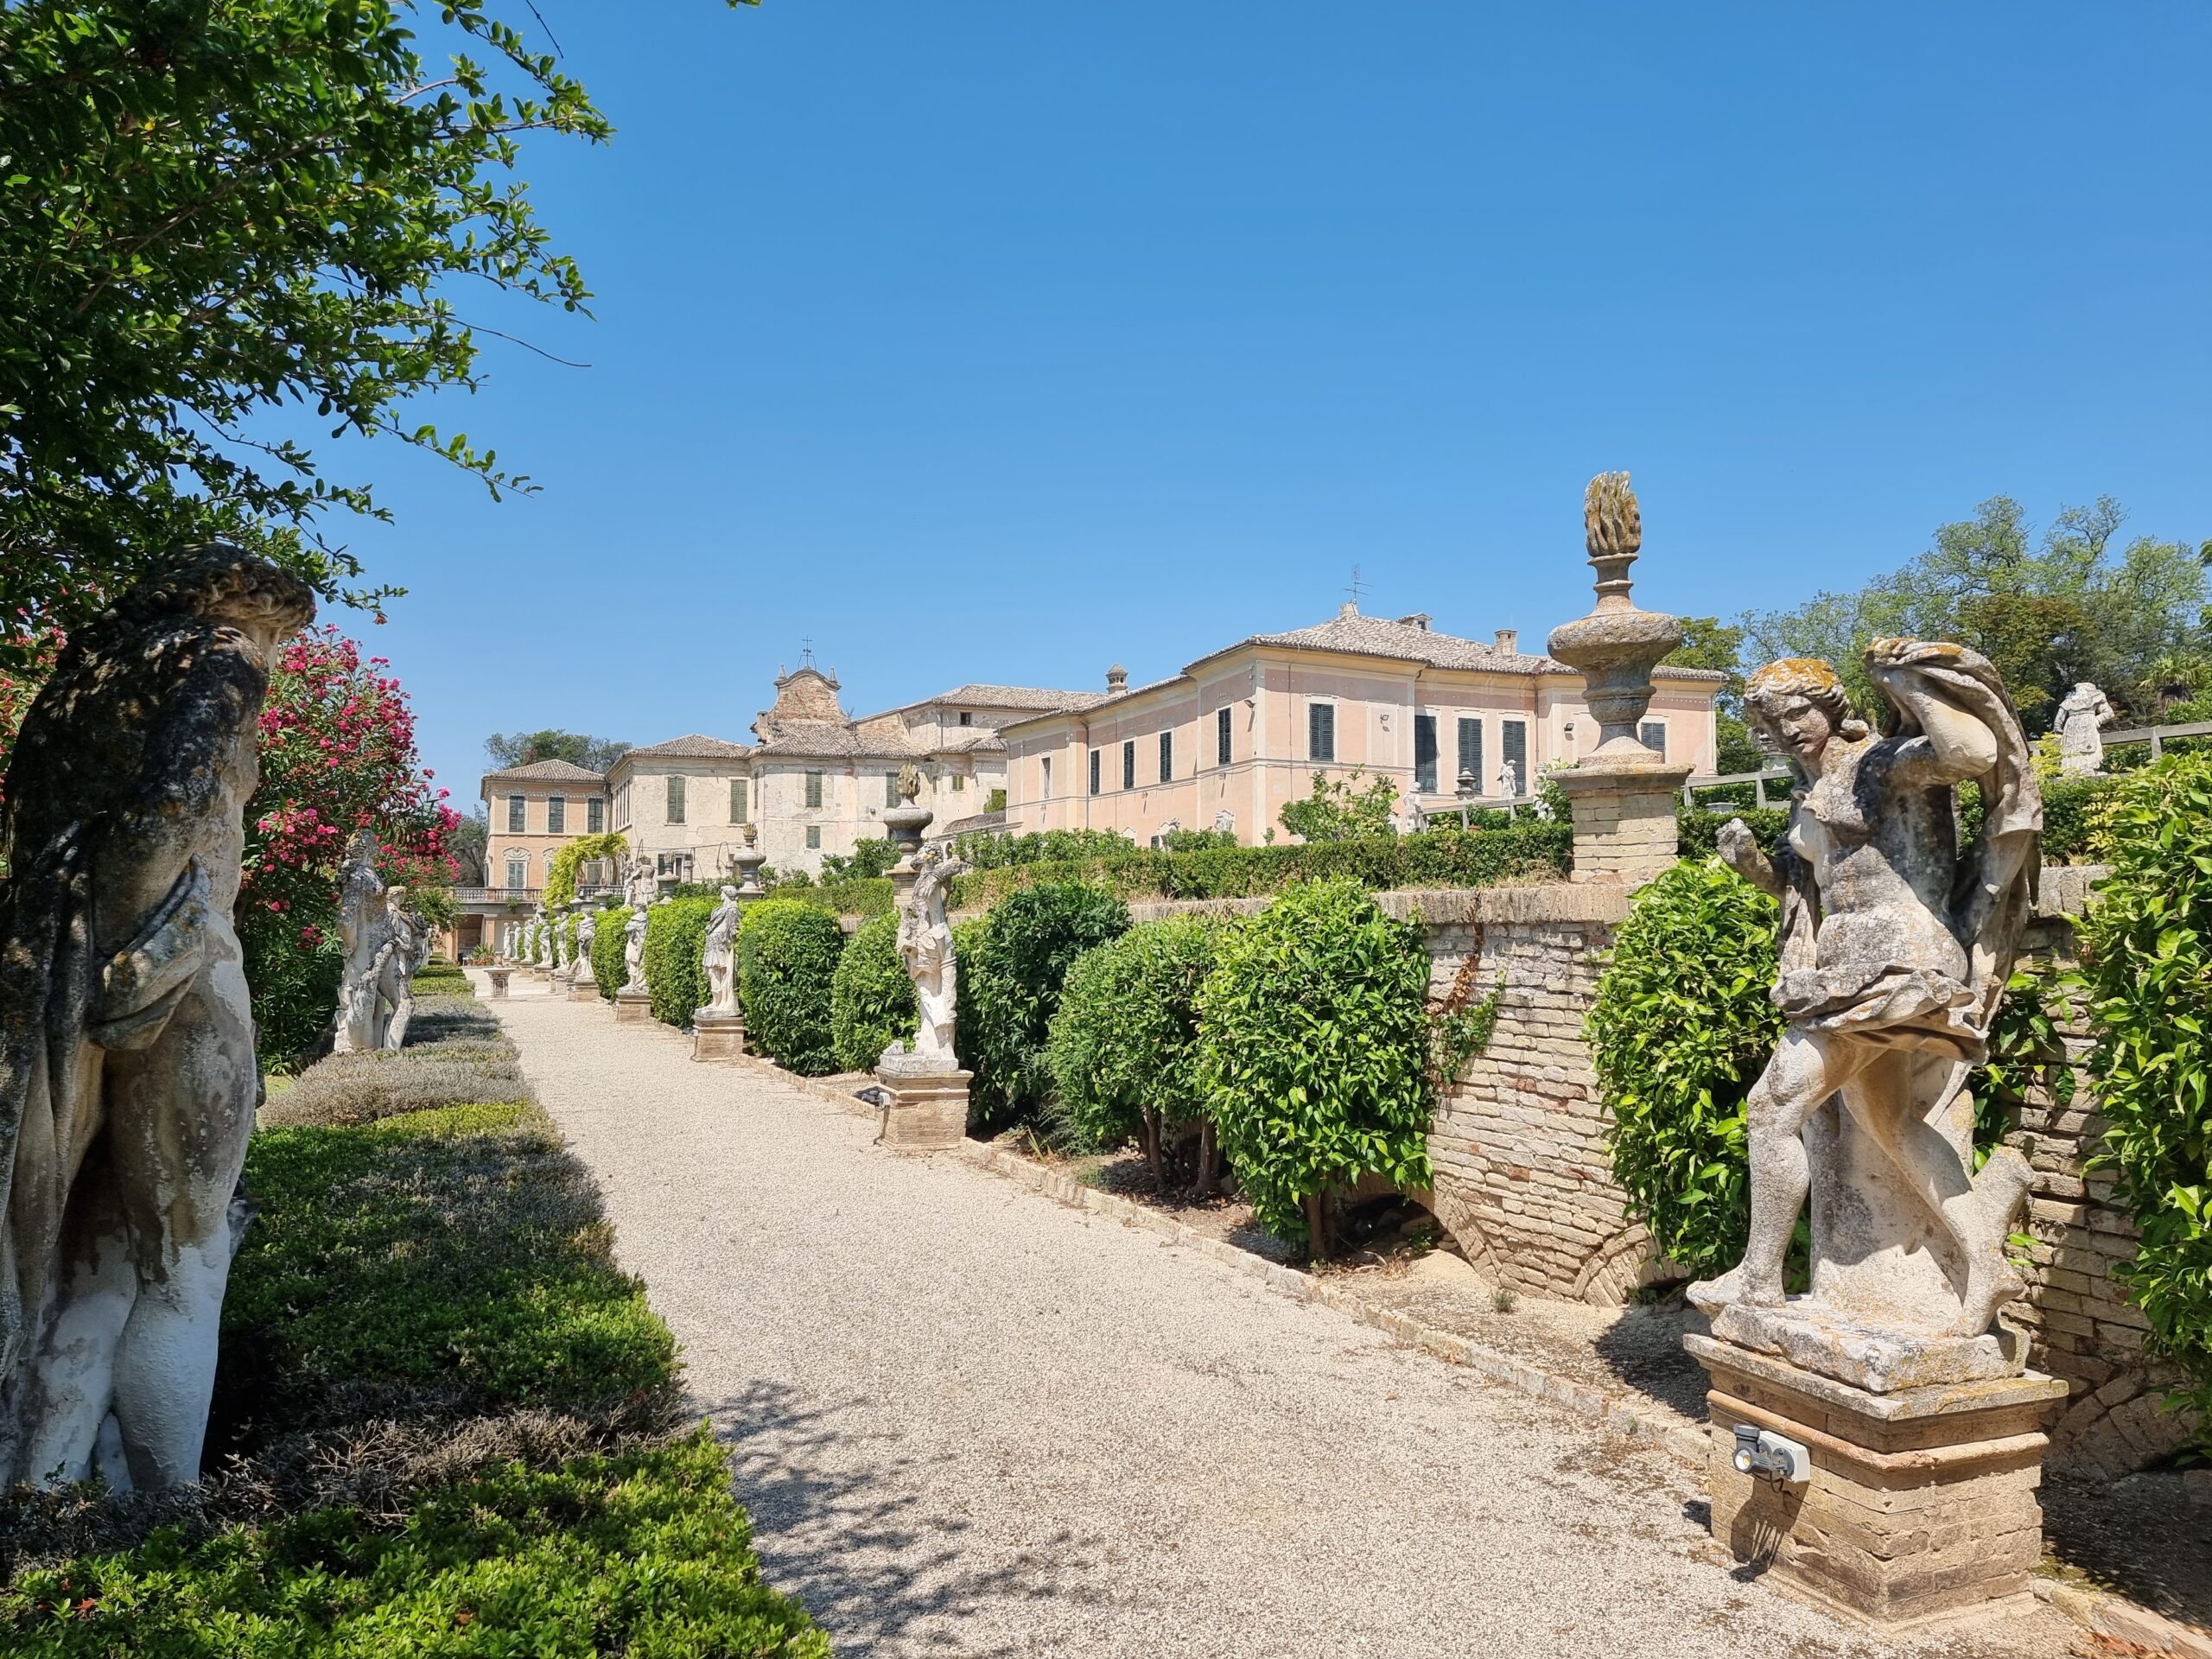 The rebirth of Villa Buonaccorsi